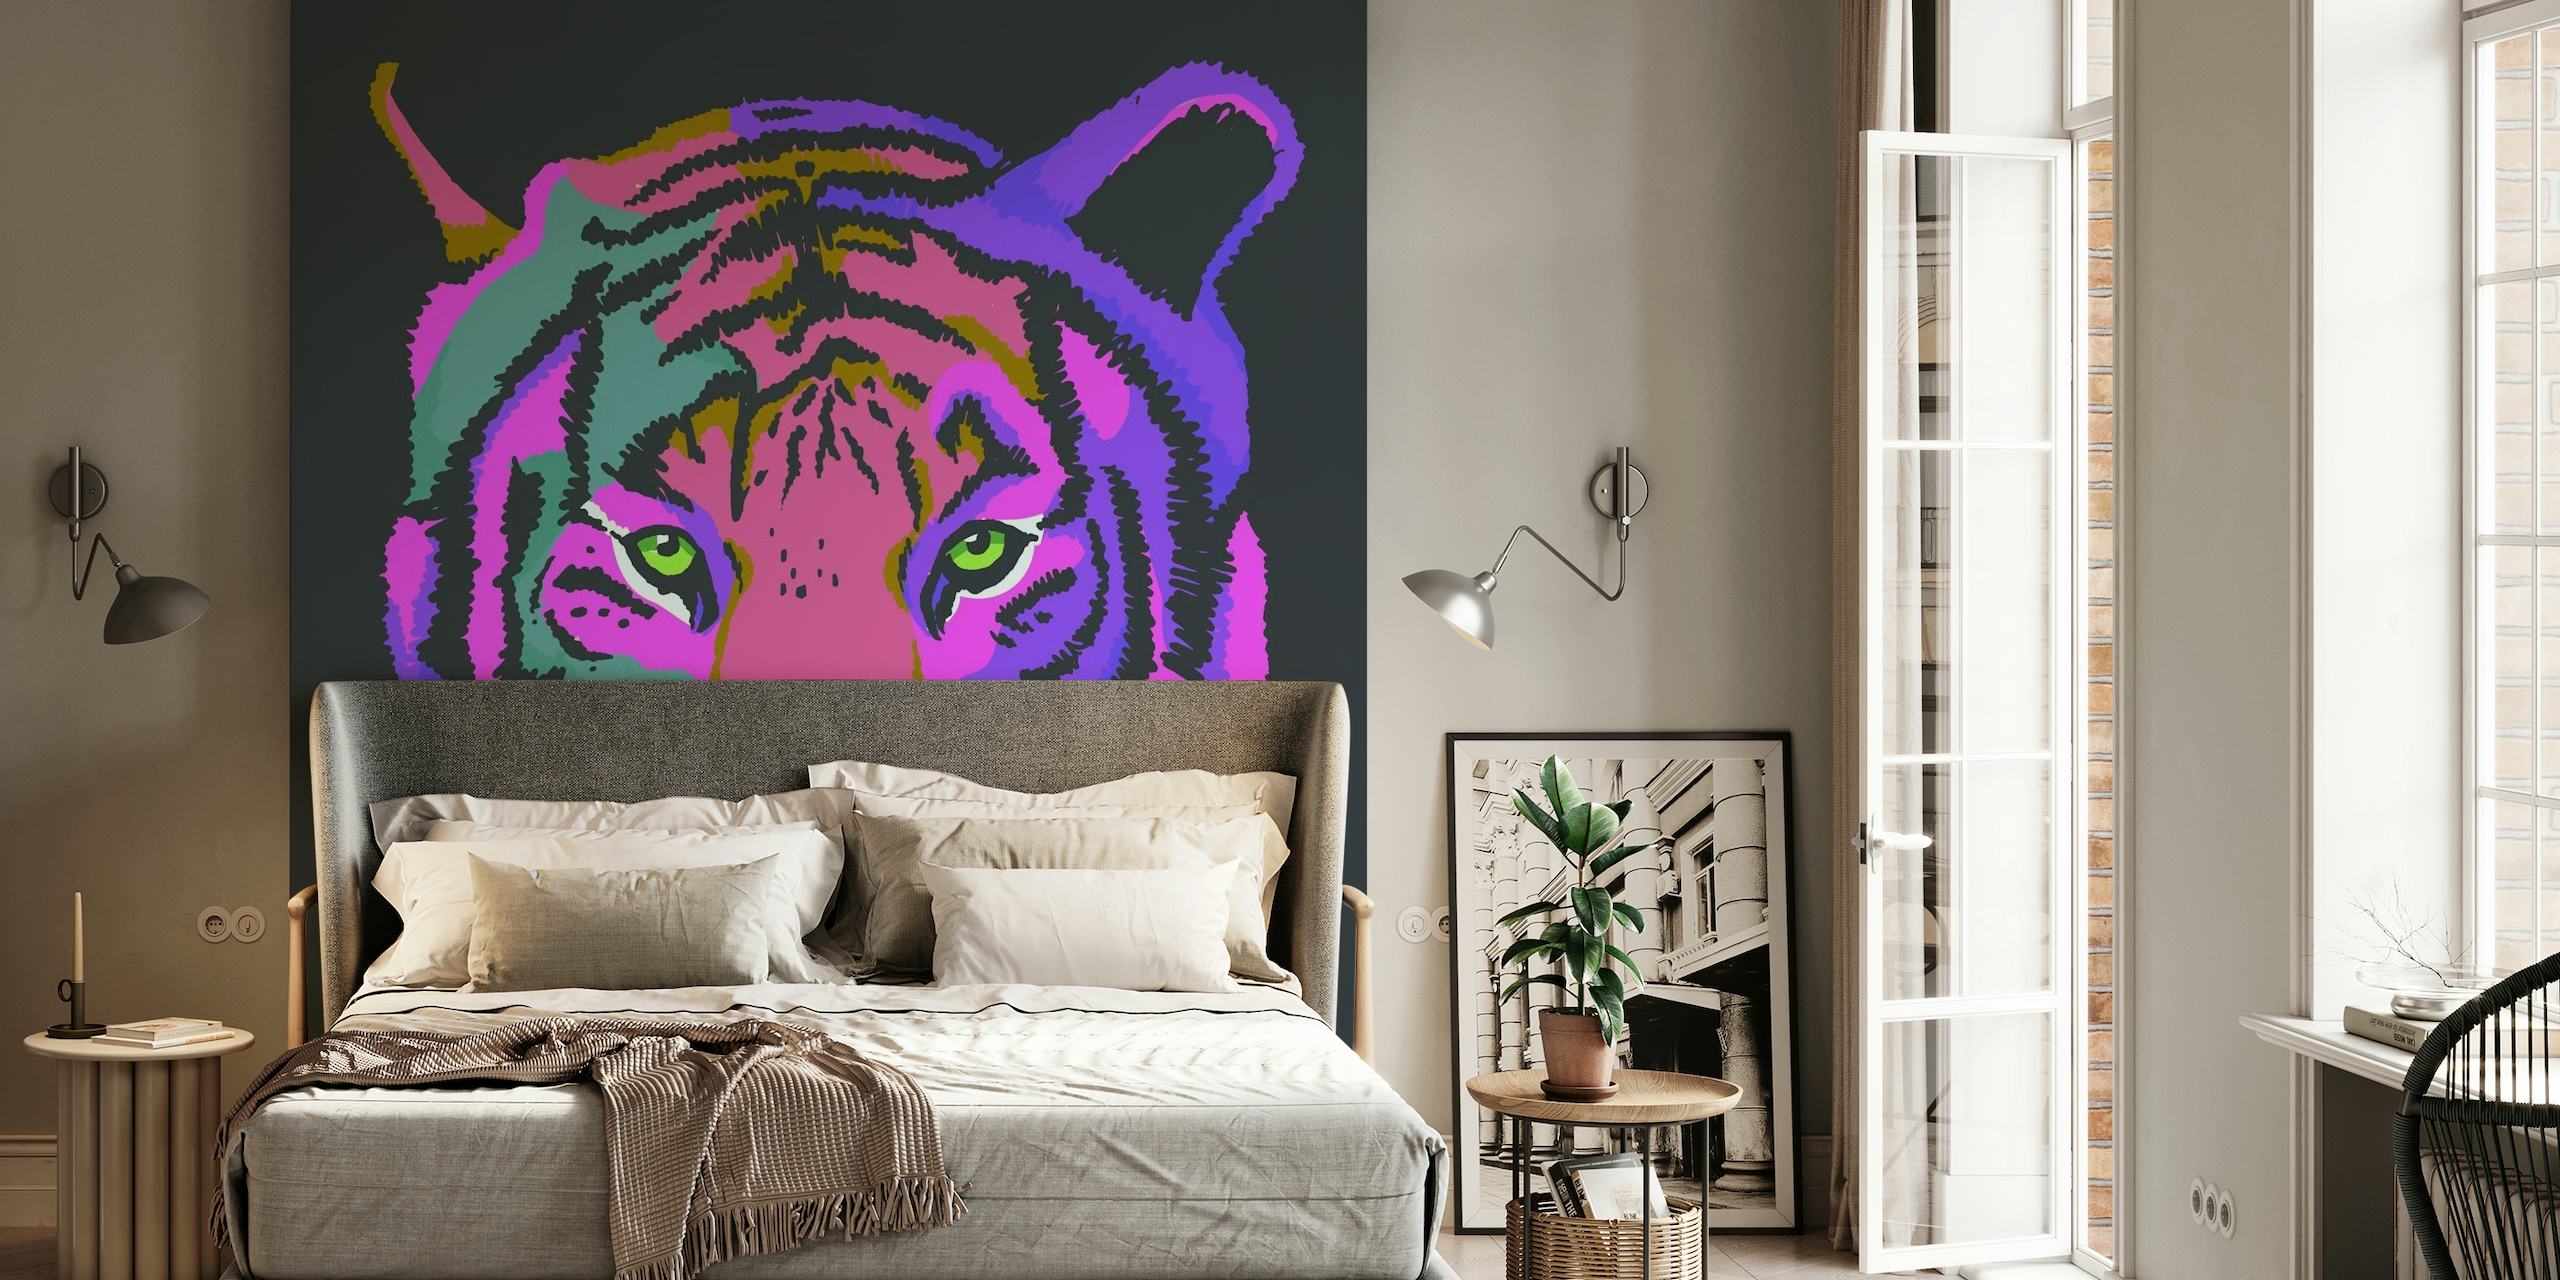 Eine farbenfrohe Fototapete mit einem stilisierten Tiger in Lila- und Rosatönen vor einem dunklen Hintergrund.